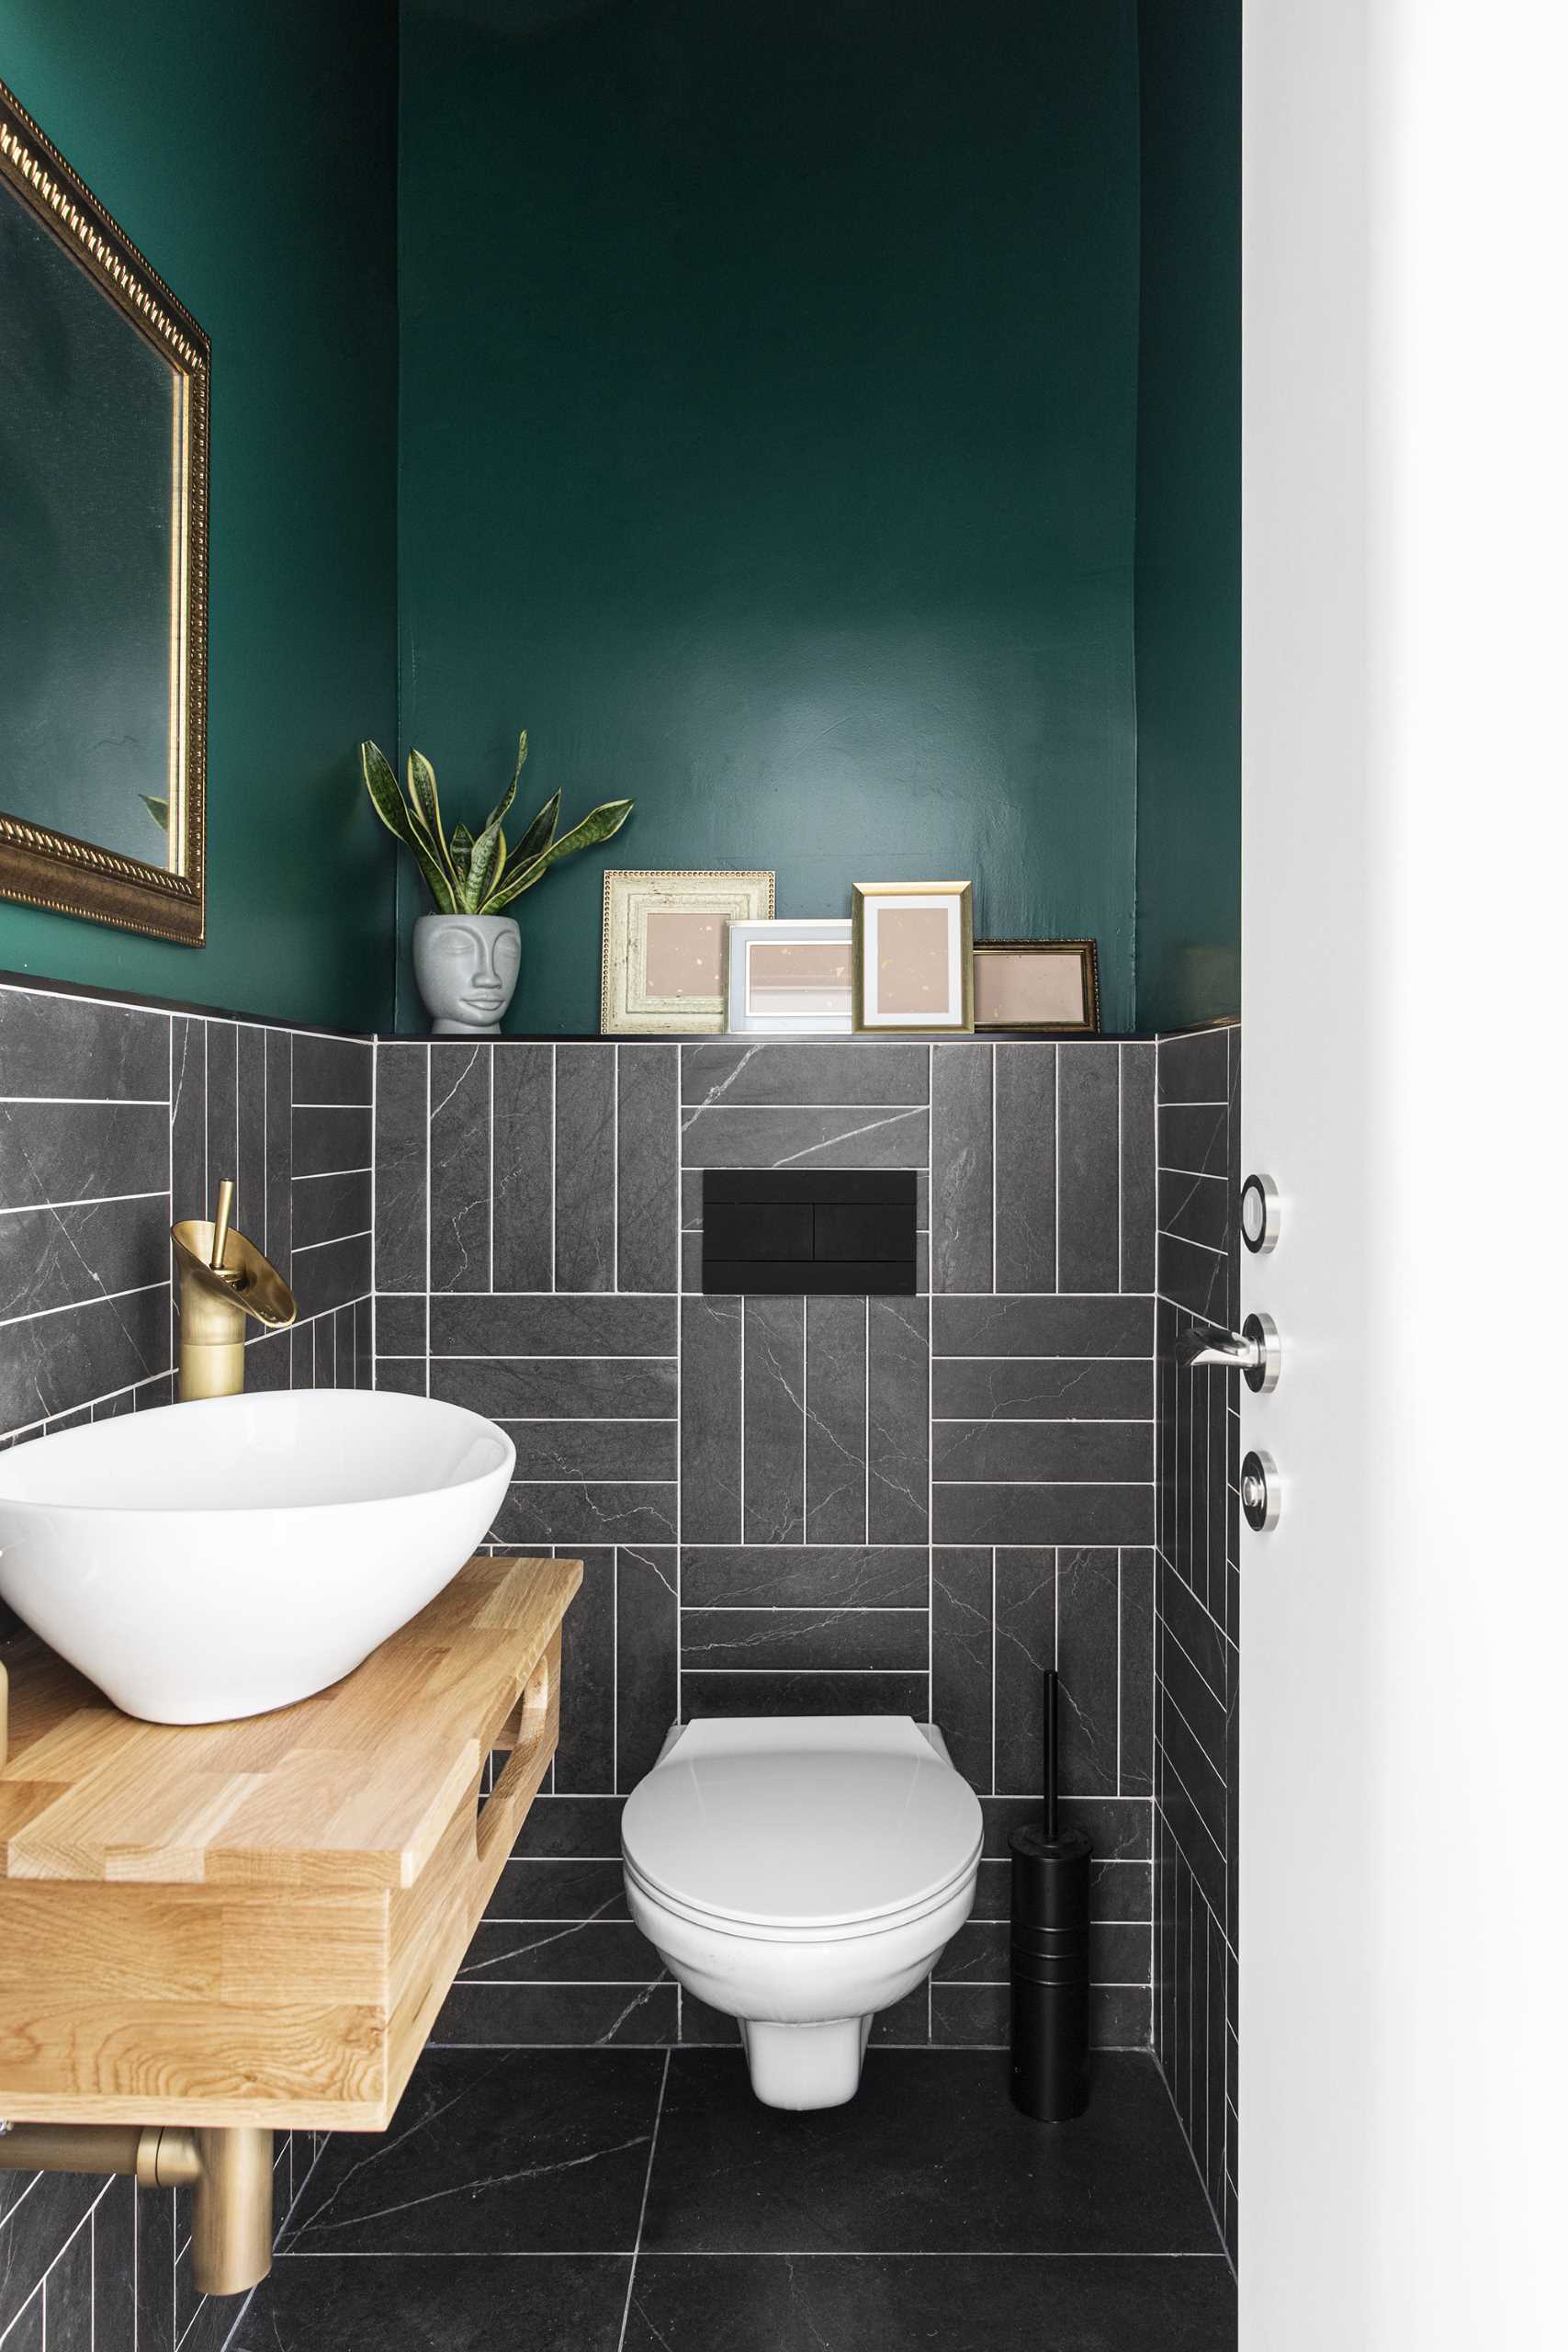 Este lavabo moderno tem paredes verdes arrojadas, azulejos cinza escuro e um espelho de moldura dourada com itens de decoração correspondentes.